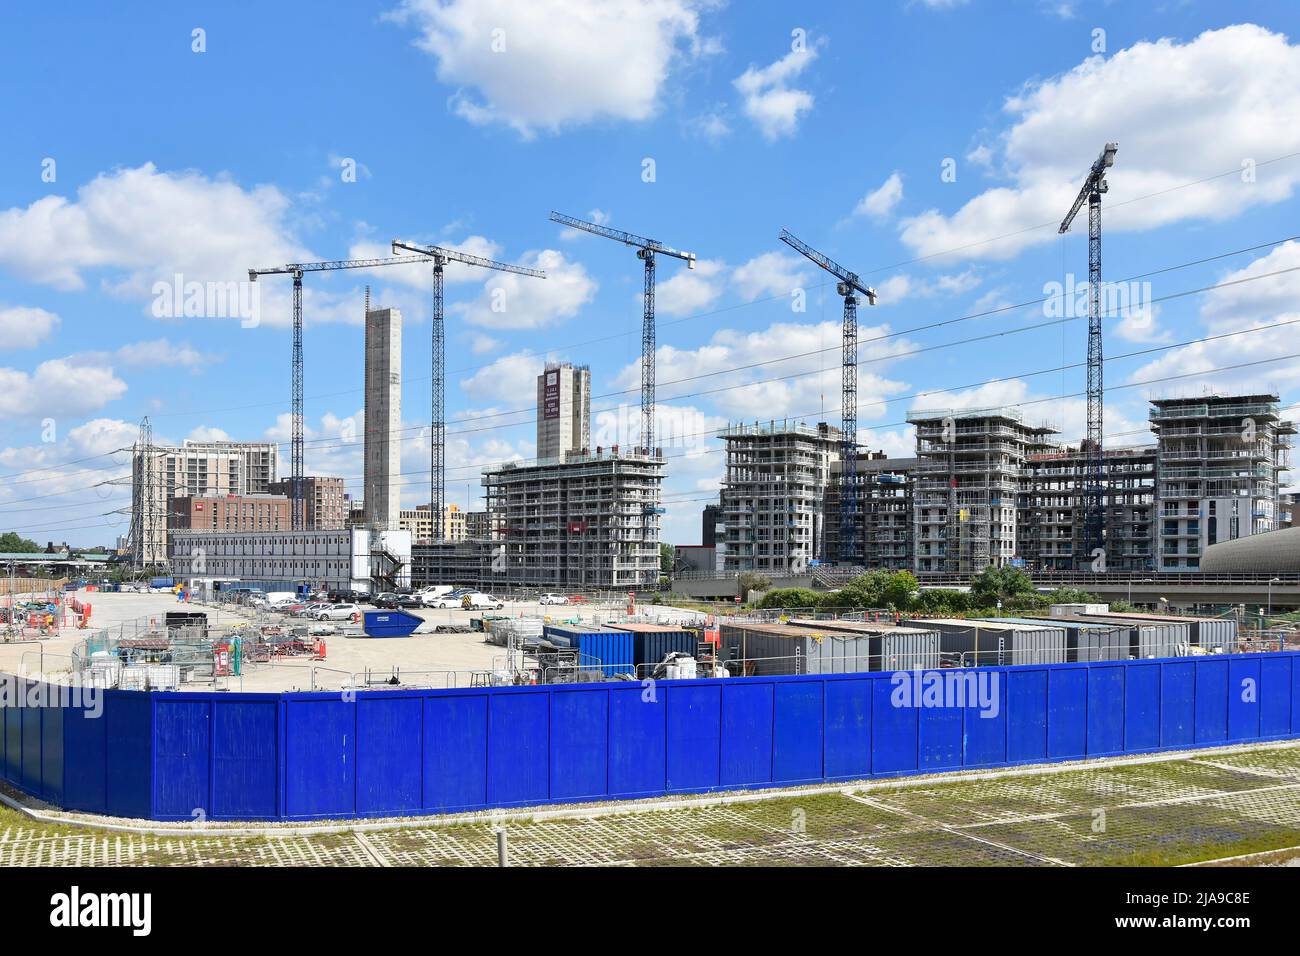 Paneles de madera azul sin marcar que encintan nuevos edificios obra en curso en bloque de apartamentos de gran altura más allá del este de Londres, Reino Unido Foto de stock